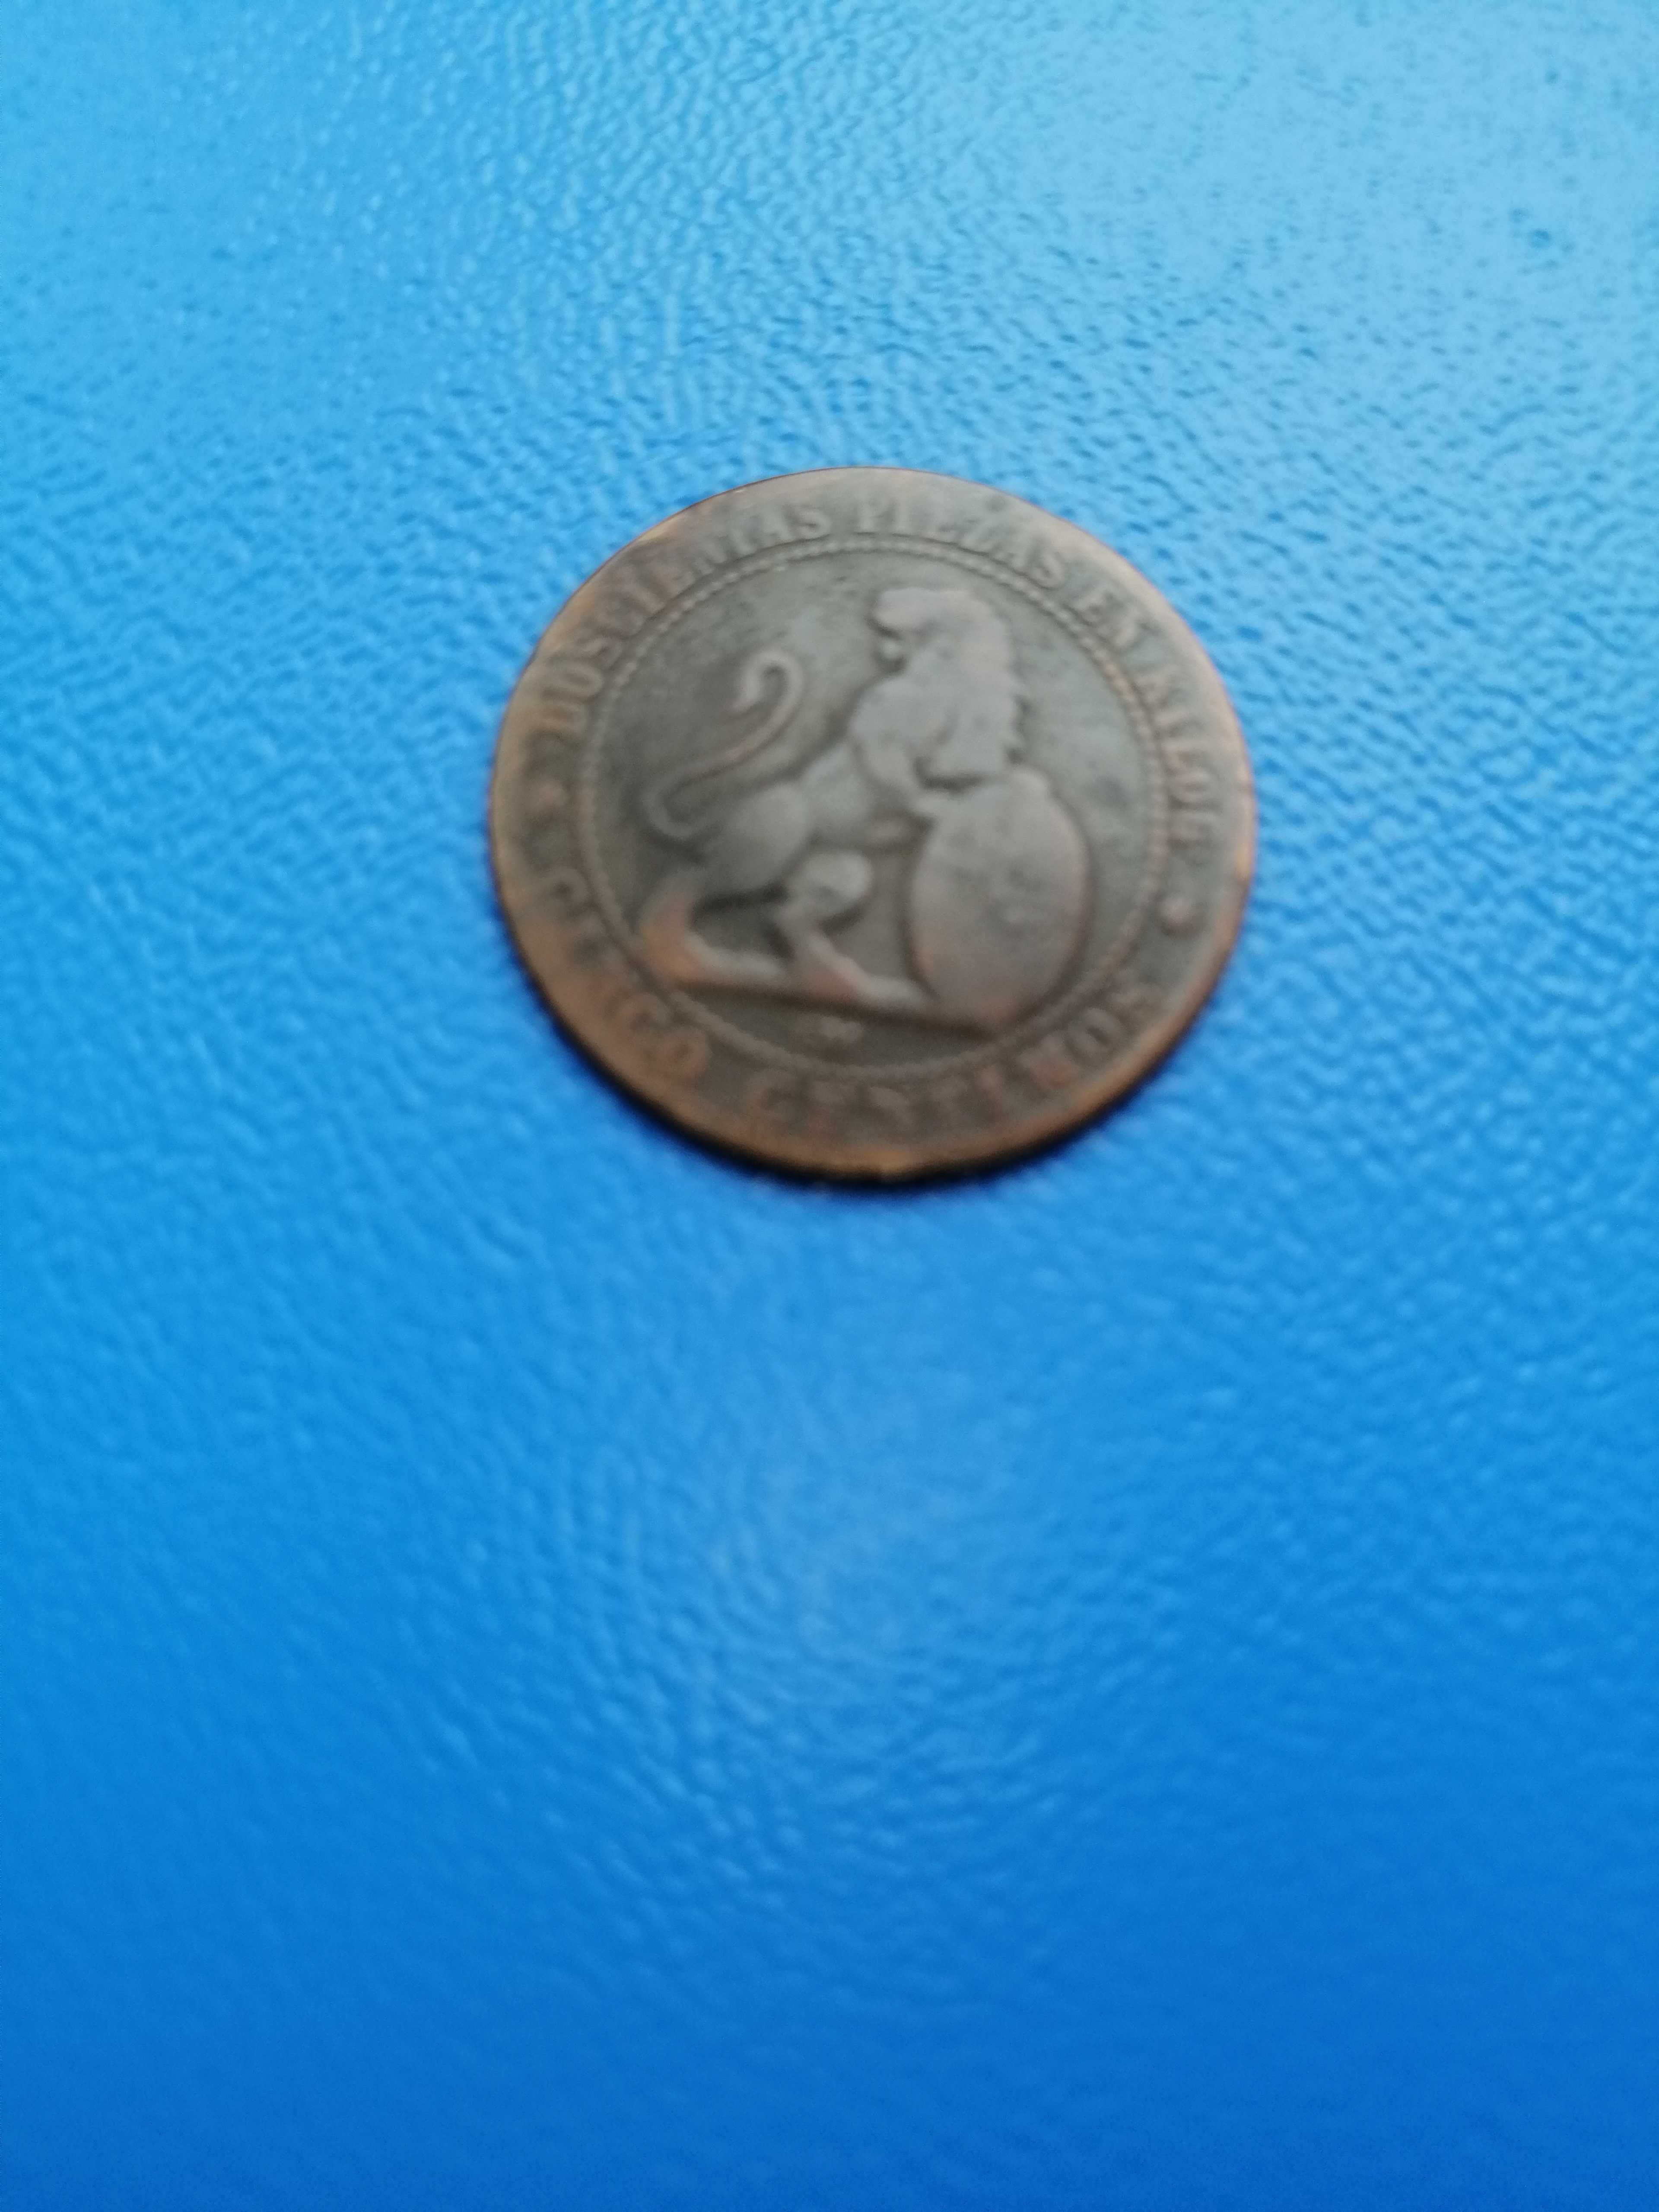 vand 3 monede vechi